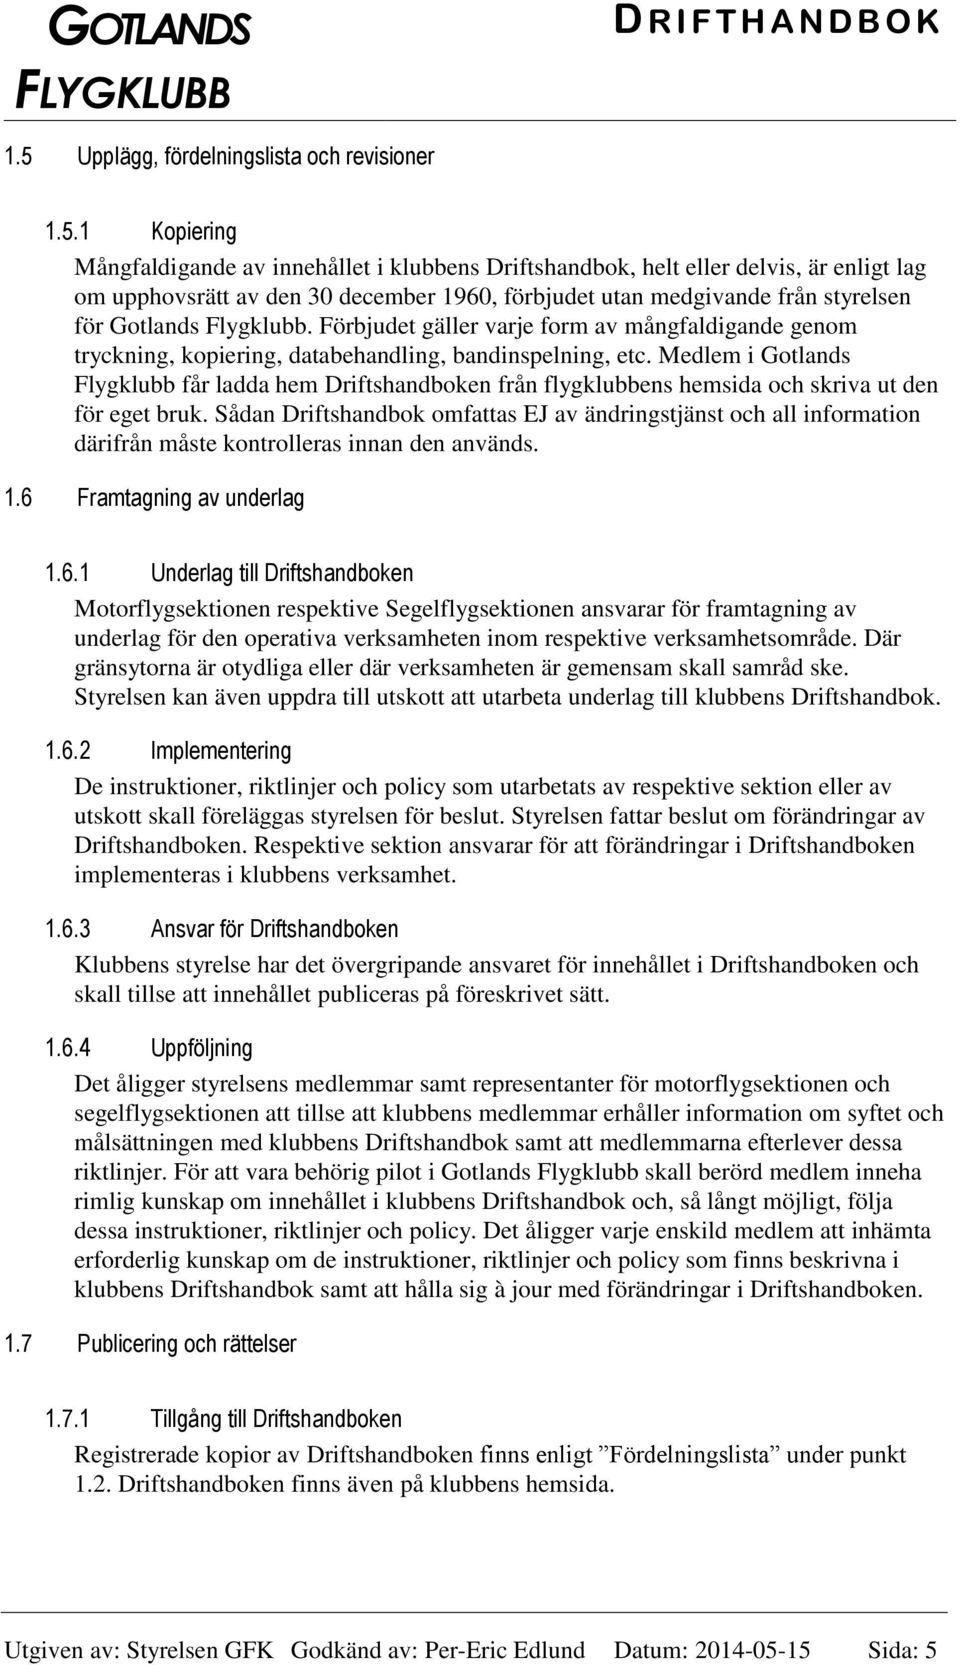 Medlem i Gotlands Flygklubb får ladda hem Driftshandboken från flygklubbens hemsida och skriva ut den för eget bruk.